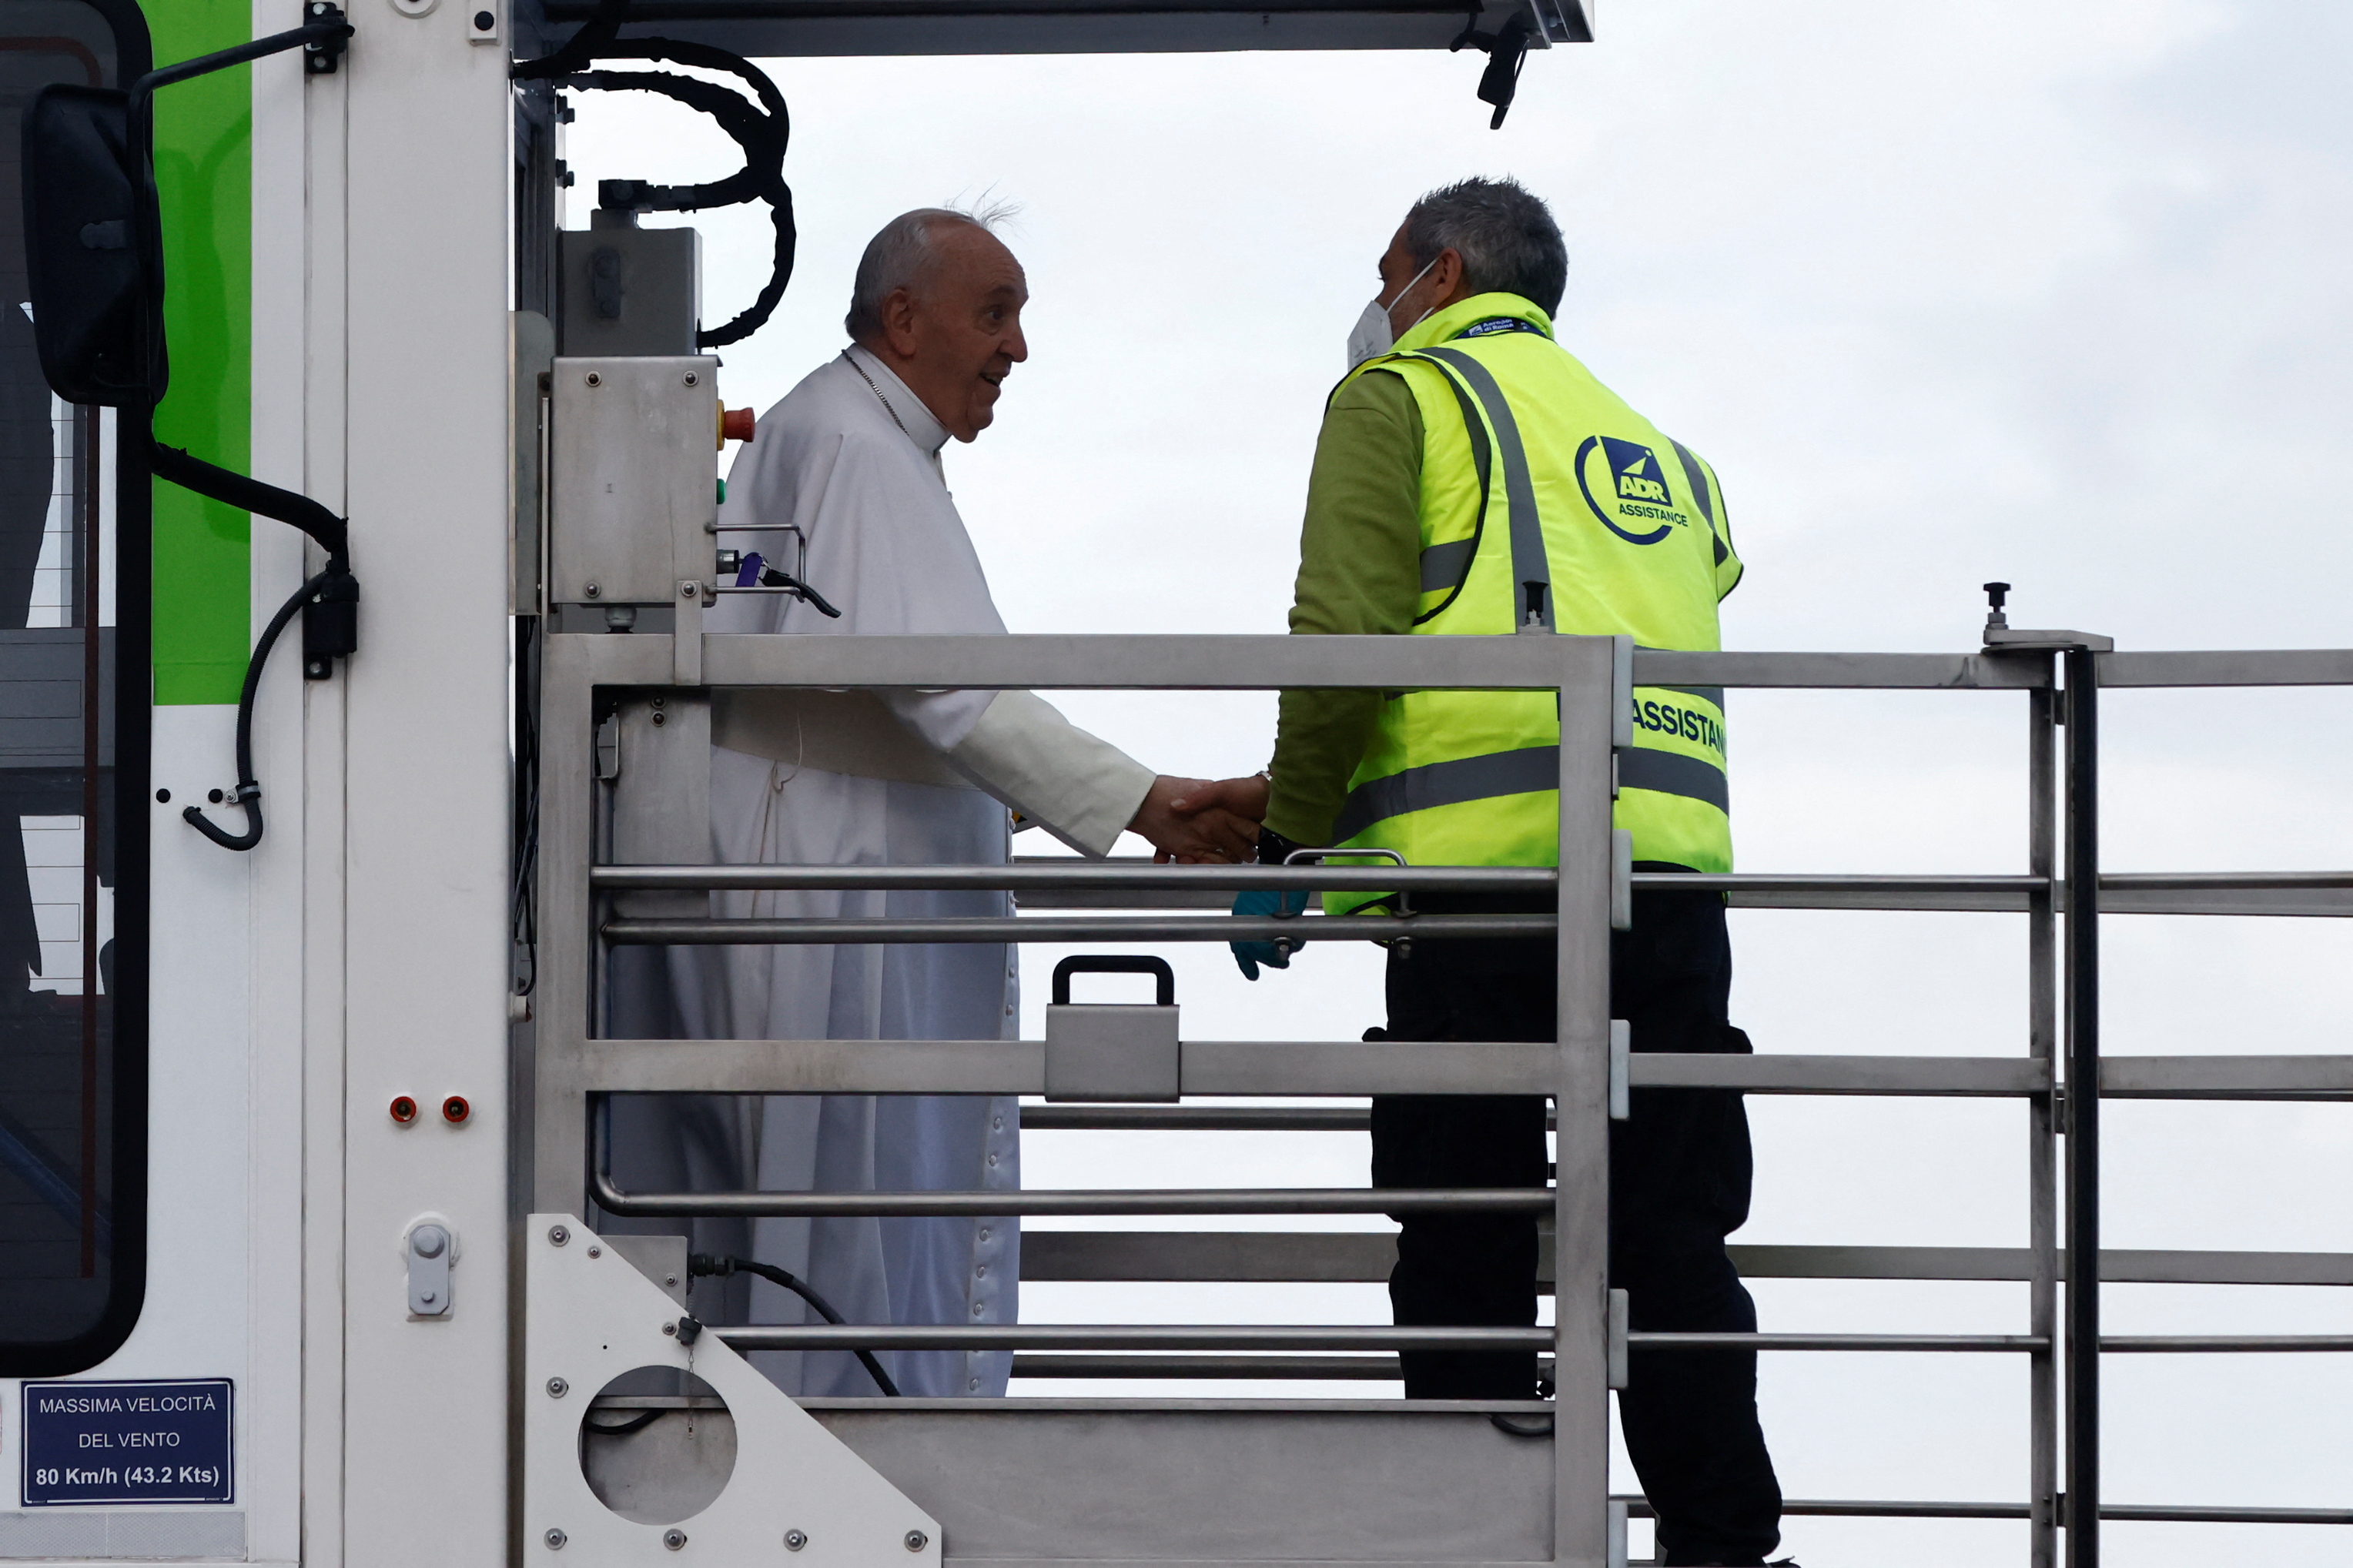 Pope Francis arrives to board a plane for his visit to Malta, at Leonardo da Vinci-Fiumicino Airport in Rome